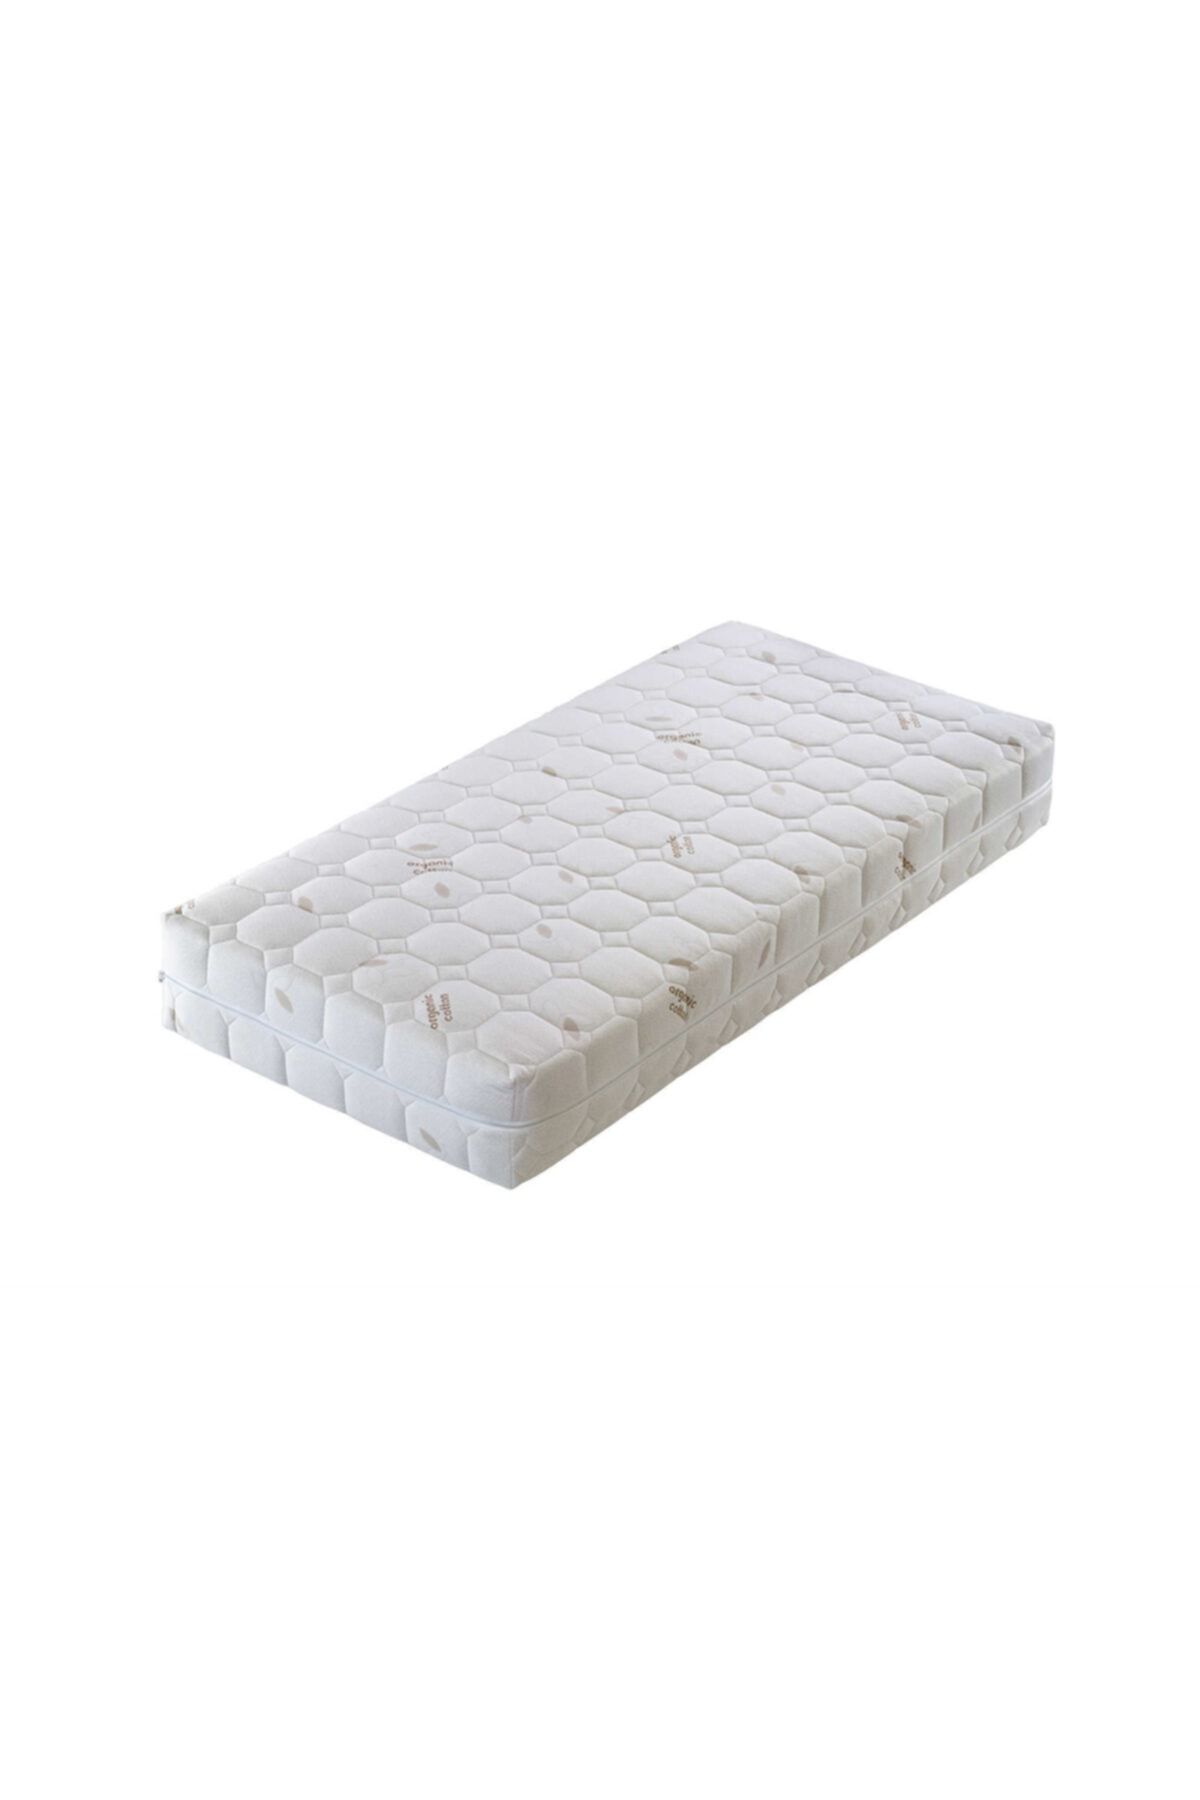 Artex Bedcom Cotton Bebek Yatağı 70x110 Kılıflı 12cm Sünger Yatak Park Yatak Oyun Parkı